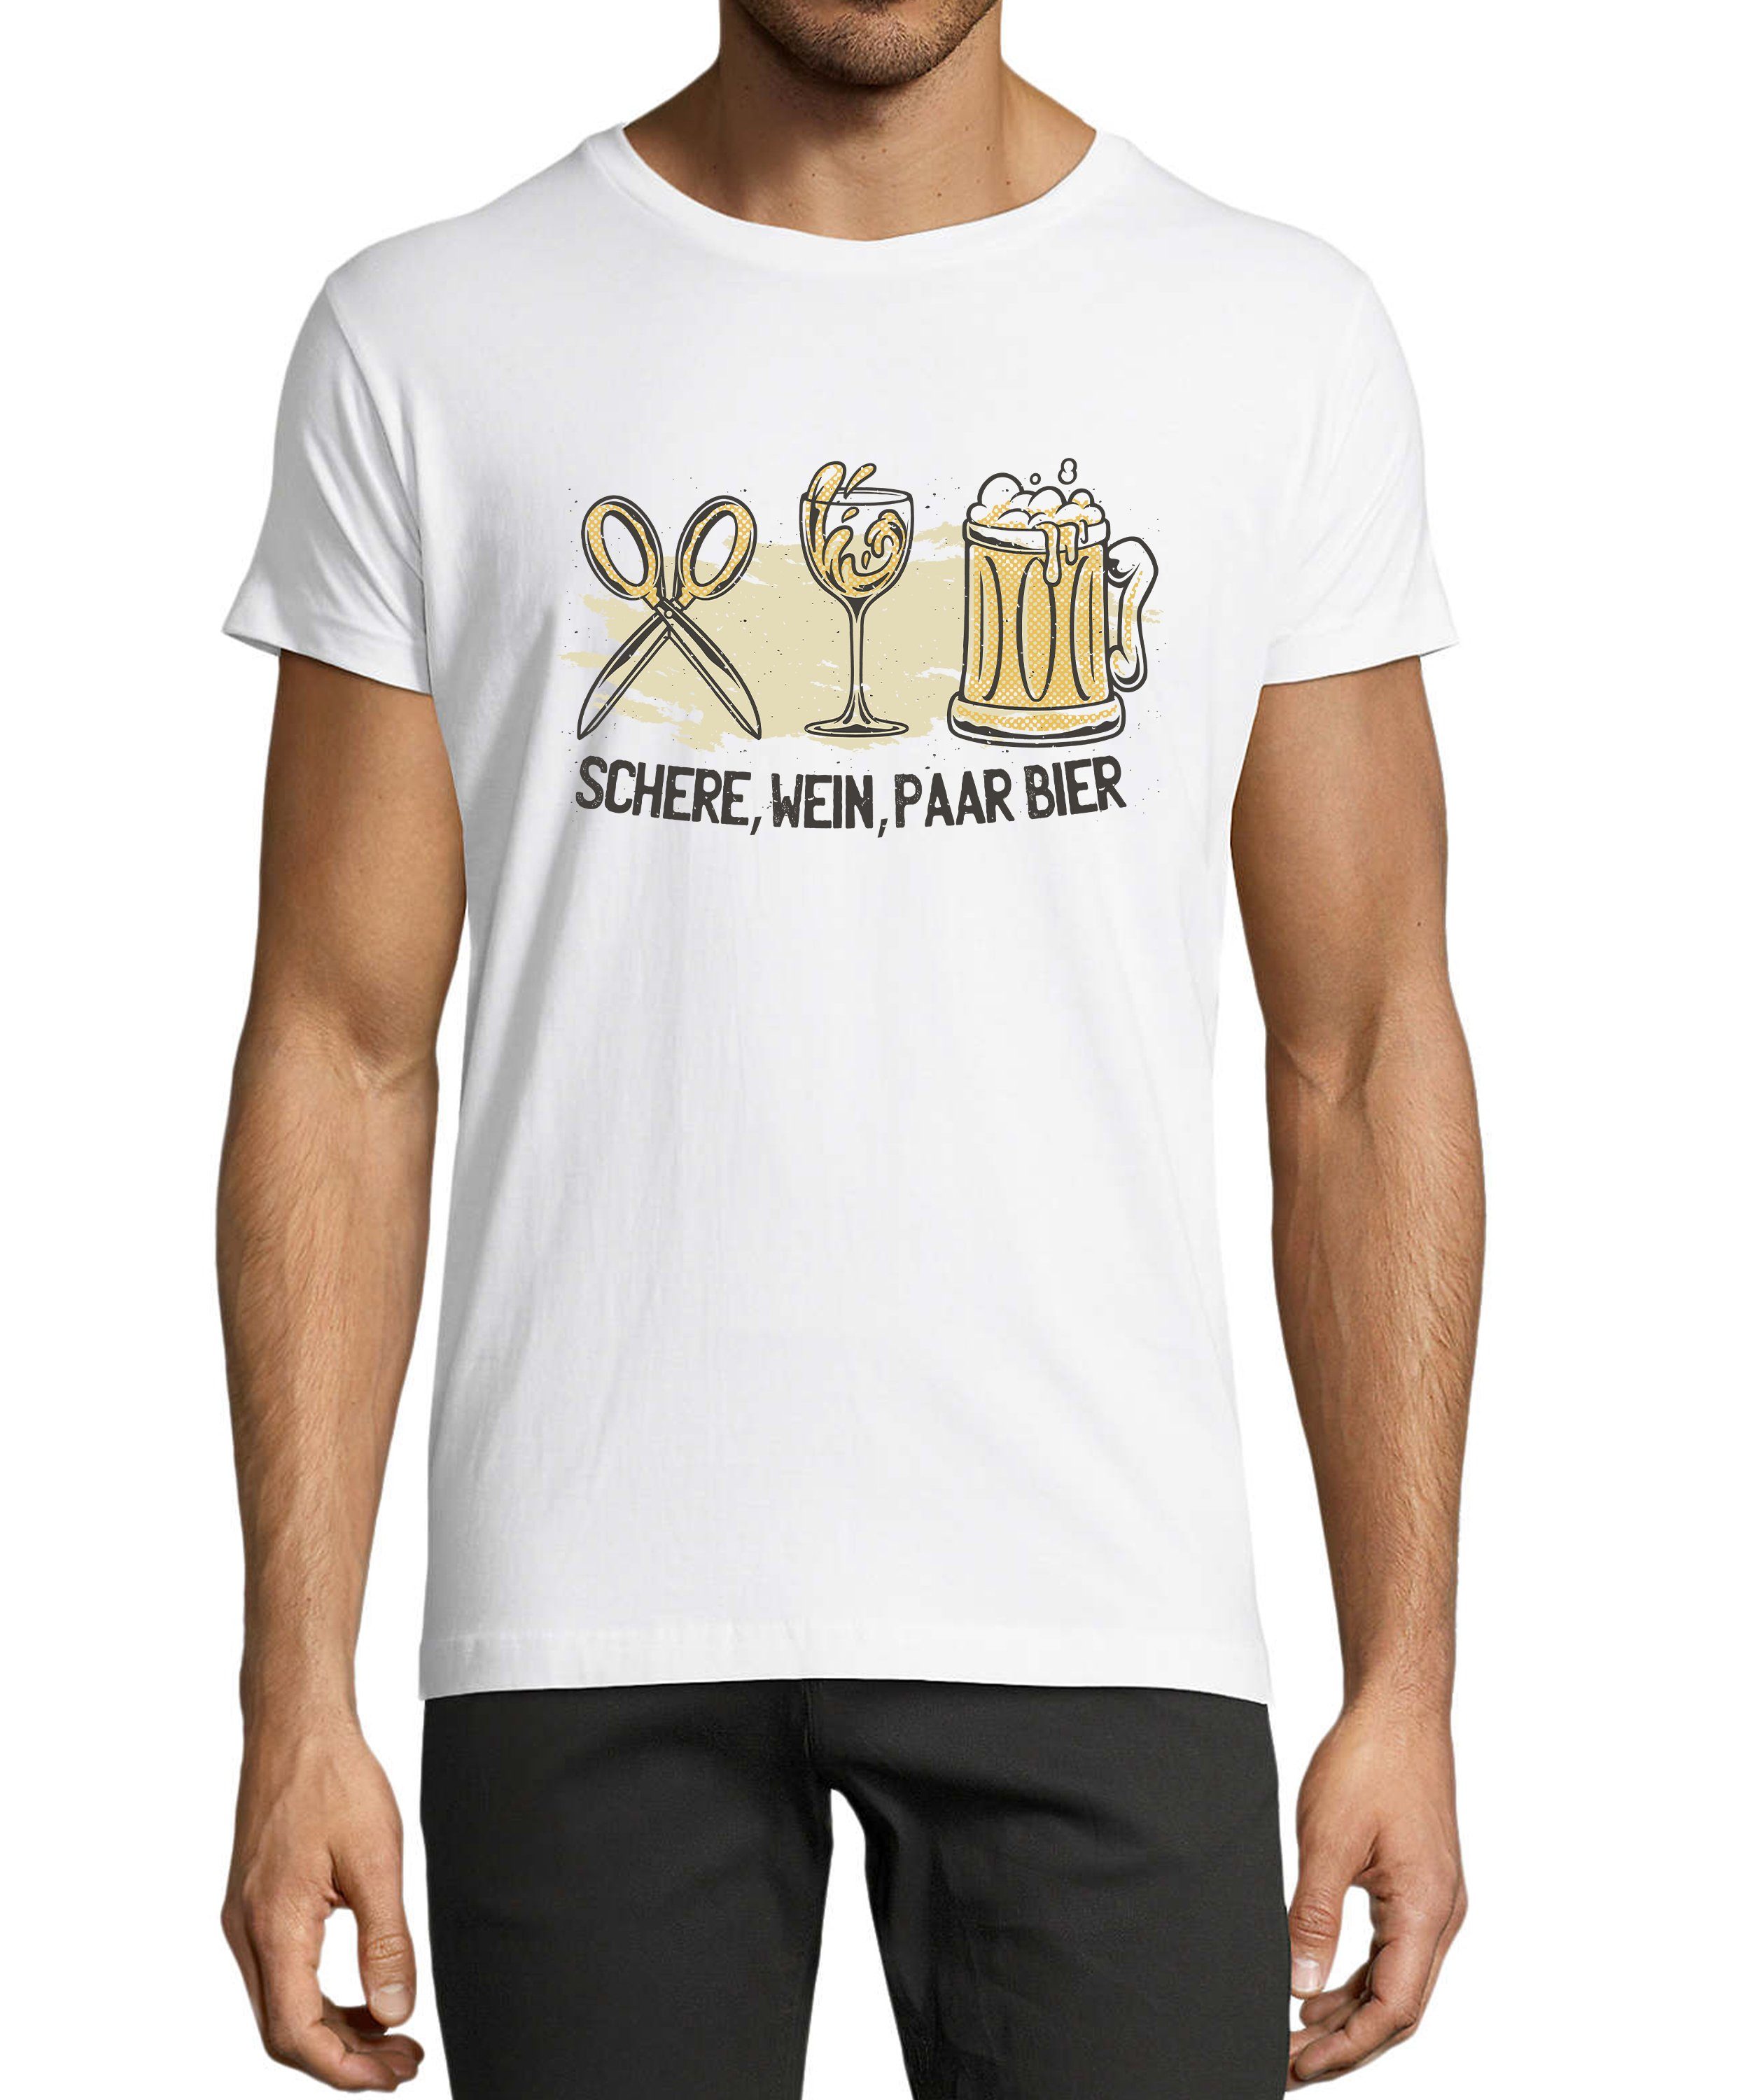 MyDesign24 Shirt mit Herren Regular T-Shirt Sprüche Wein, i321 Schere, Trinkshirt Bier Baumwollshirt Fit, Aufdruck weiss Paar -